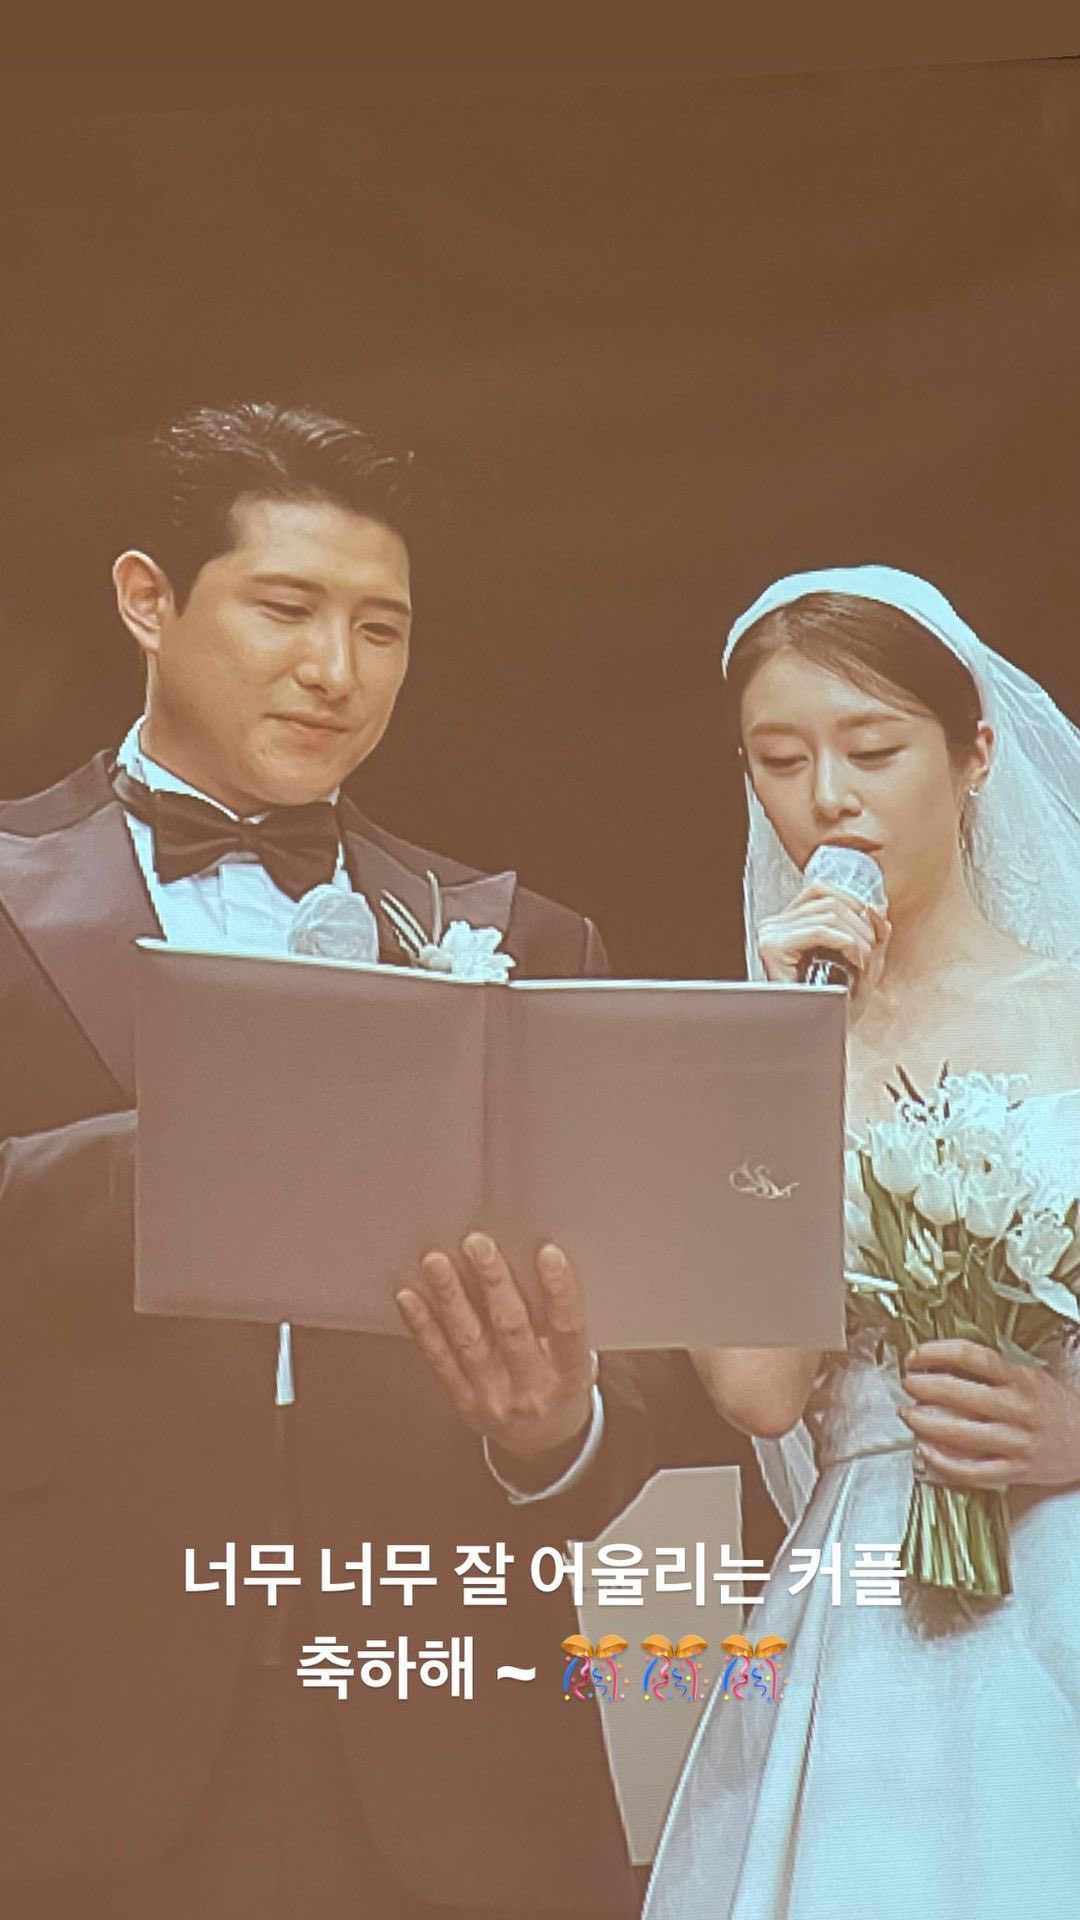 Đám cưới Jiyeon (T-ara): Cô dâu đẹp xỉu, chú rể và IU - Lee Hongki biến hôn lễ thành concert, T-ara - Suju dẫn đầu dàn siêu sao - Ảnh 8.